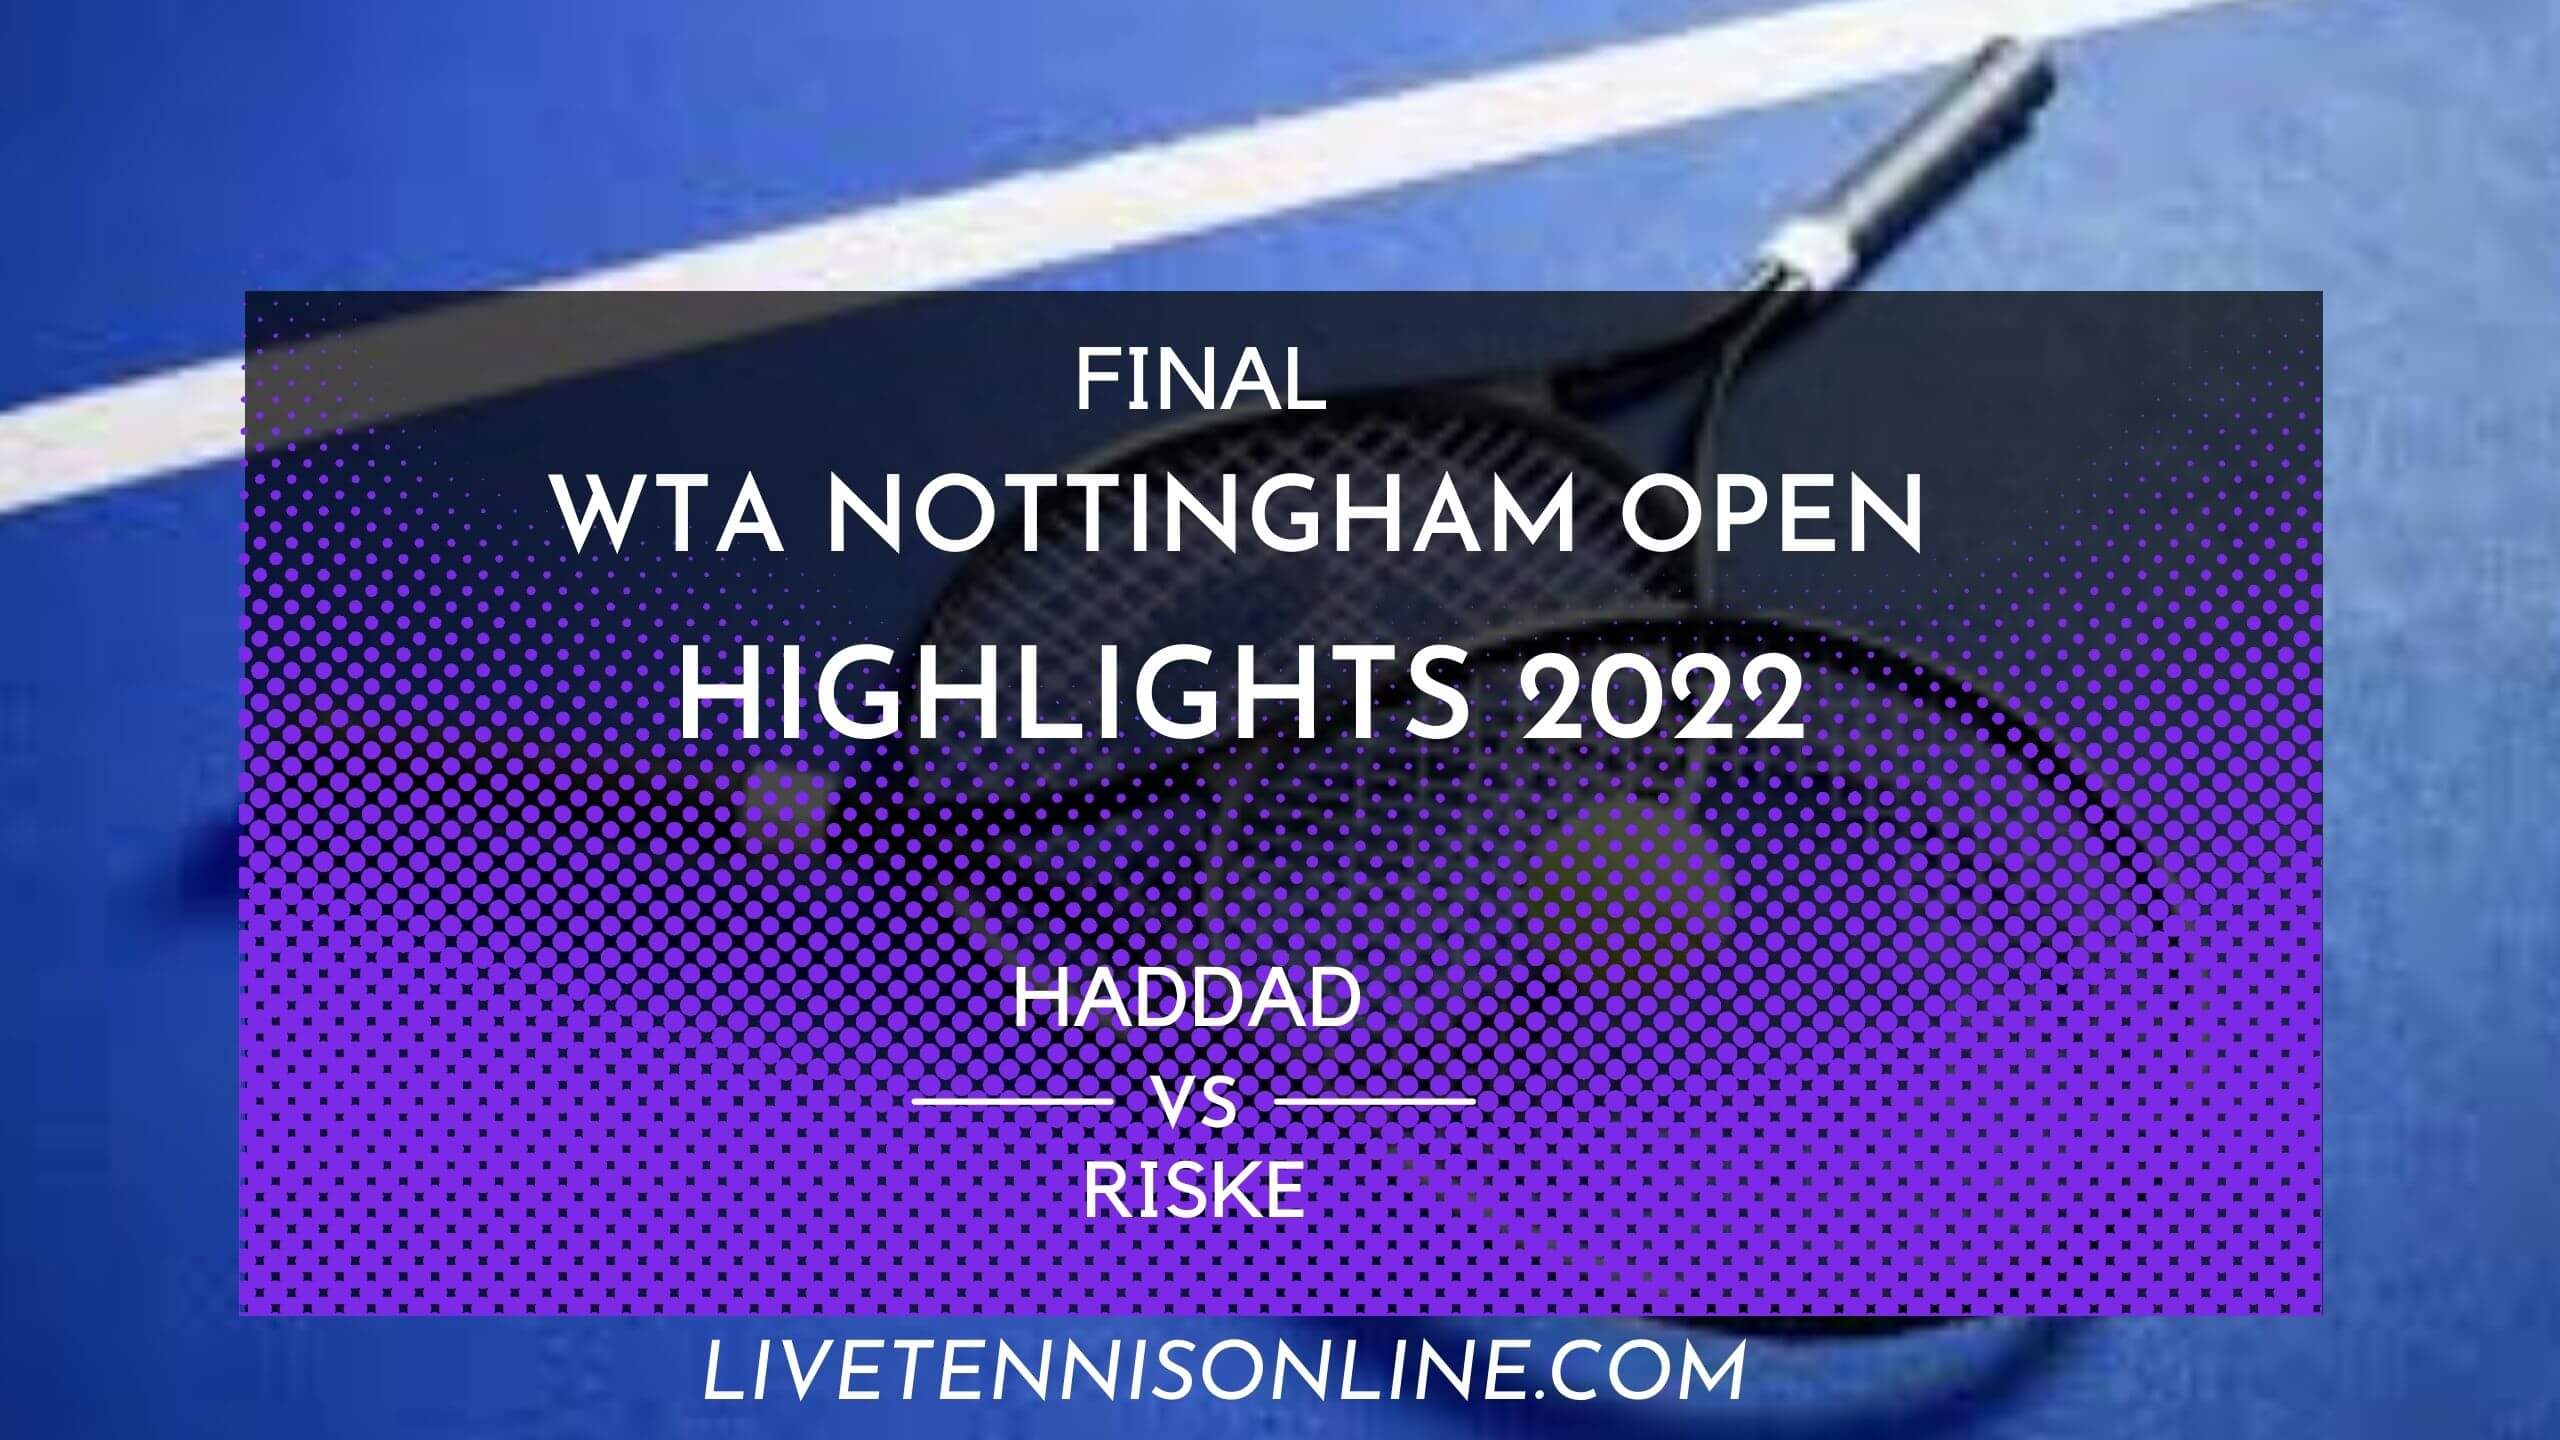 Haddad Vs Riske Final Highlights 2022 Nottingham Open